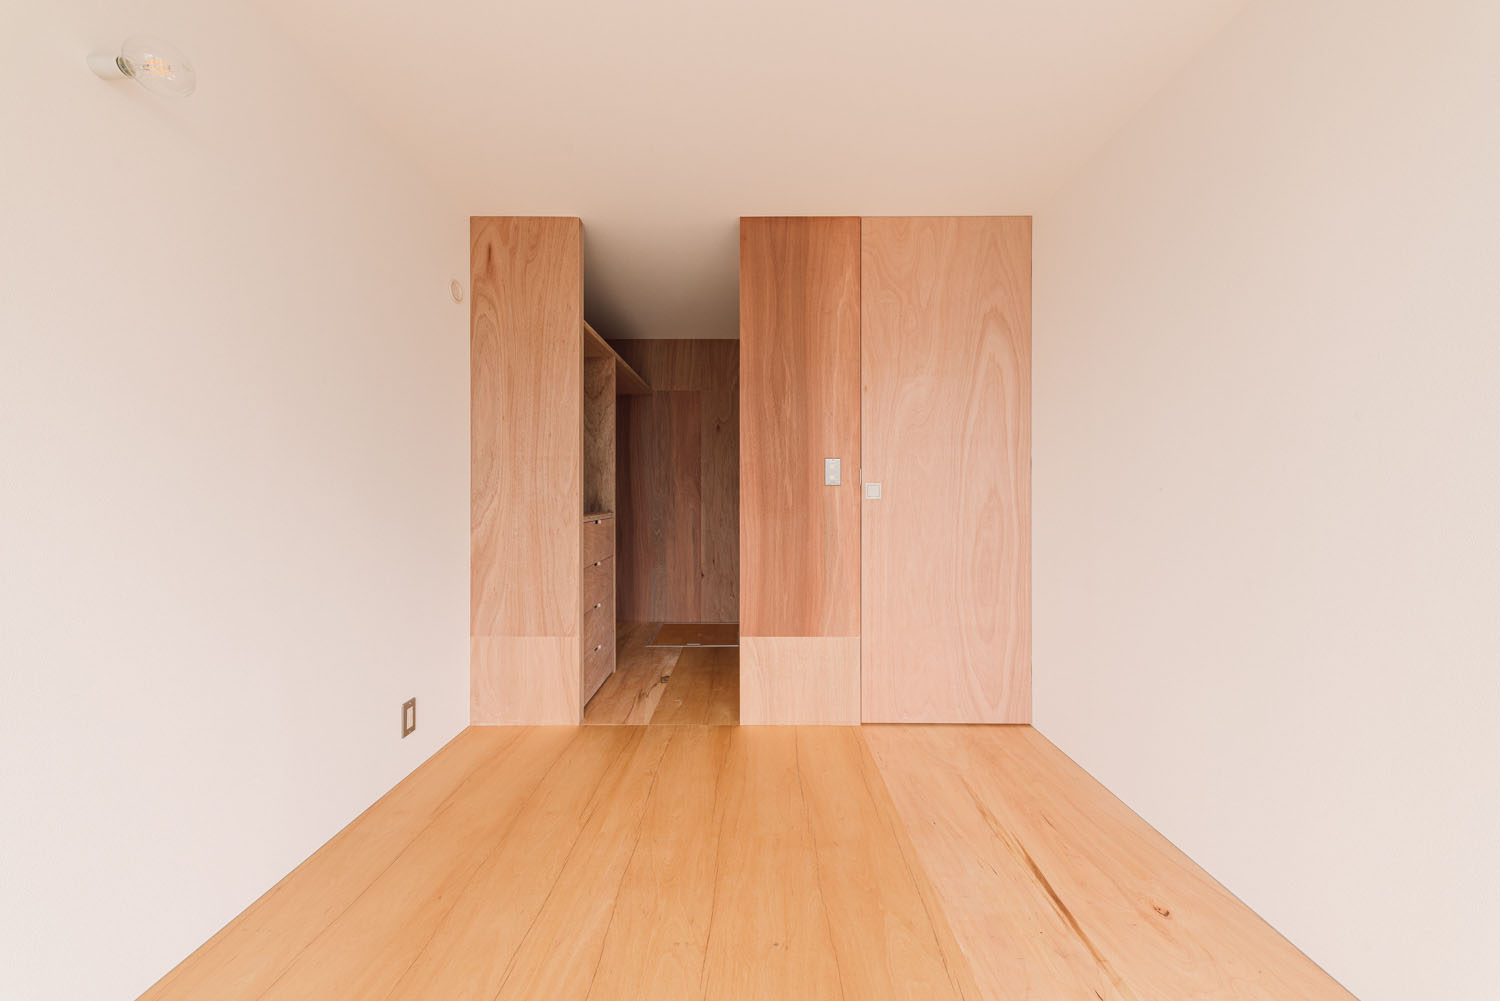 建具をすべて木材で統一したフローリングの寝室・デザイン住宅